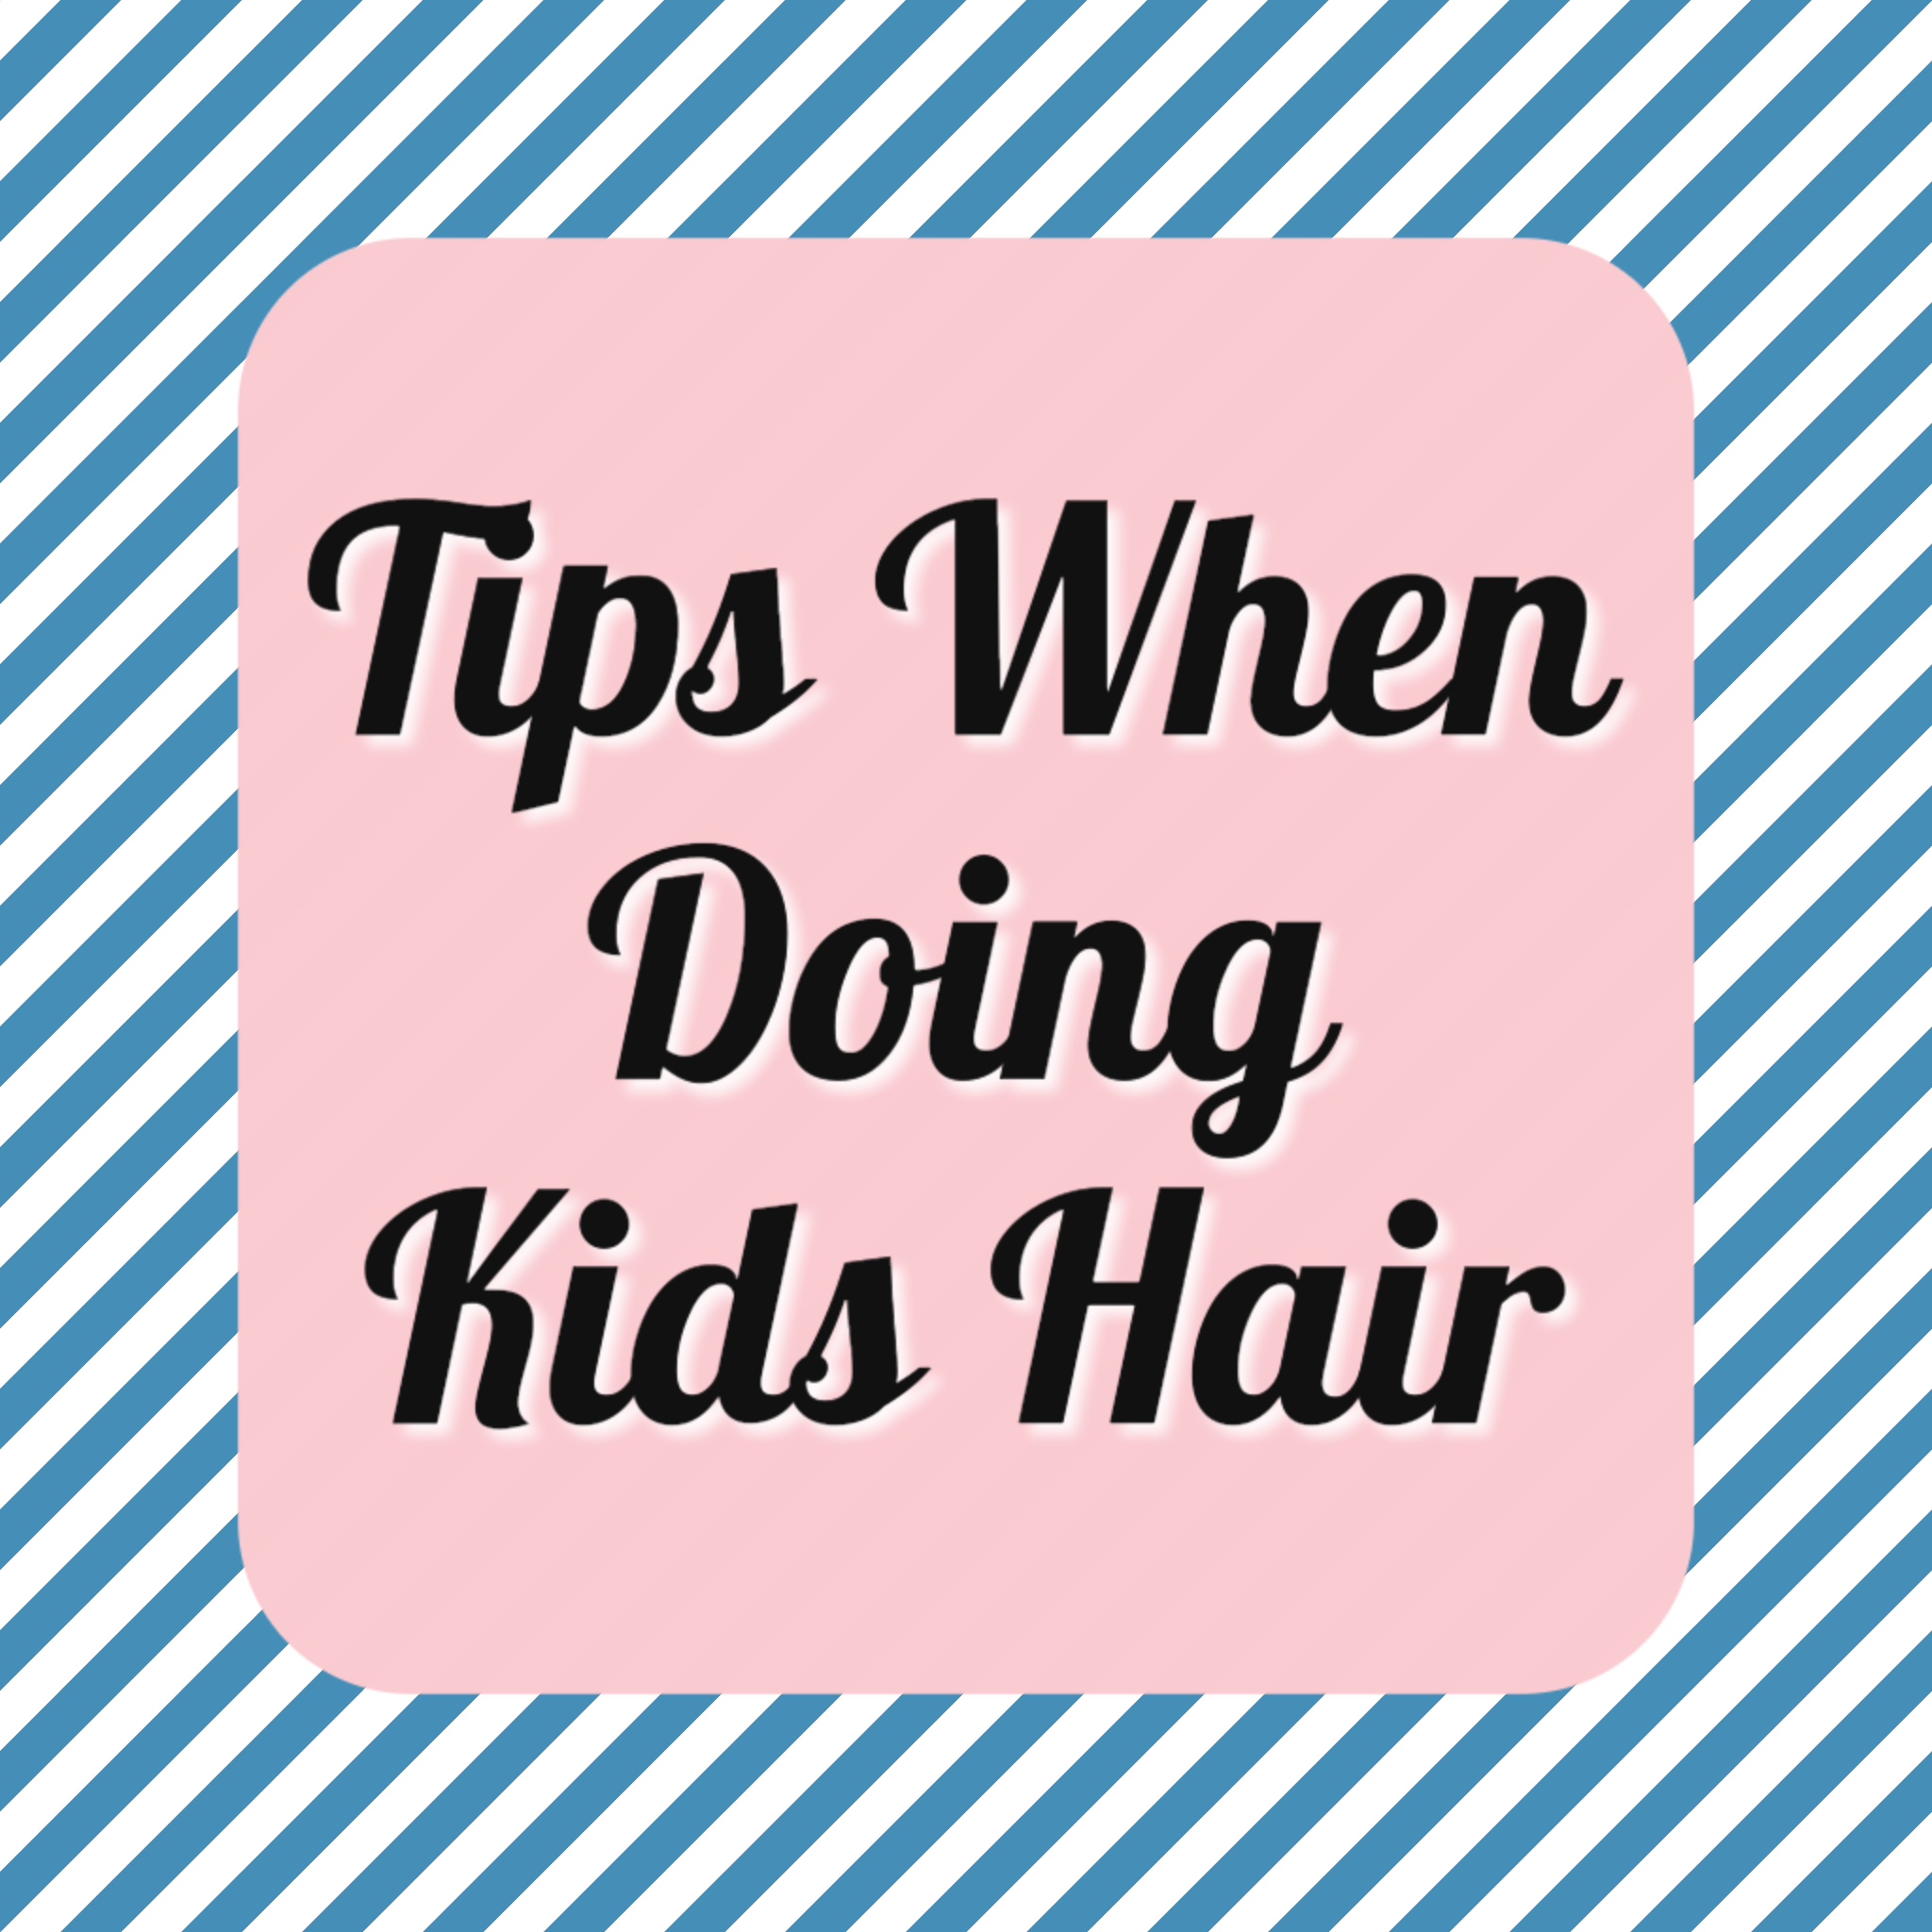 Tips When Doing Kids Hair